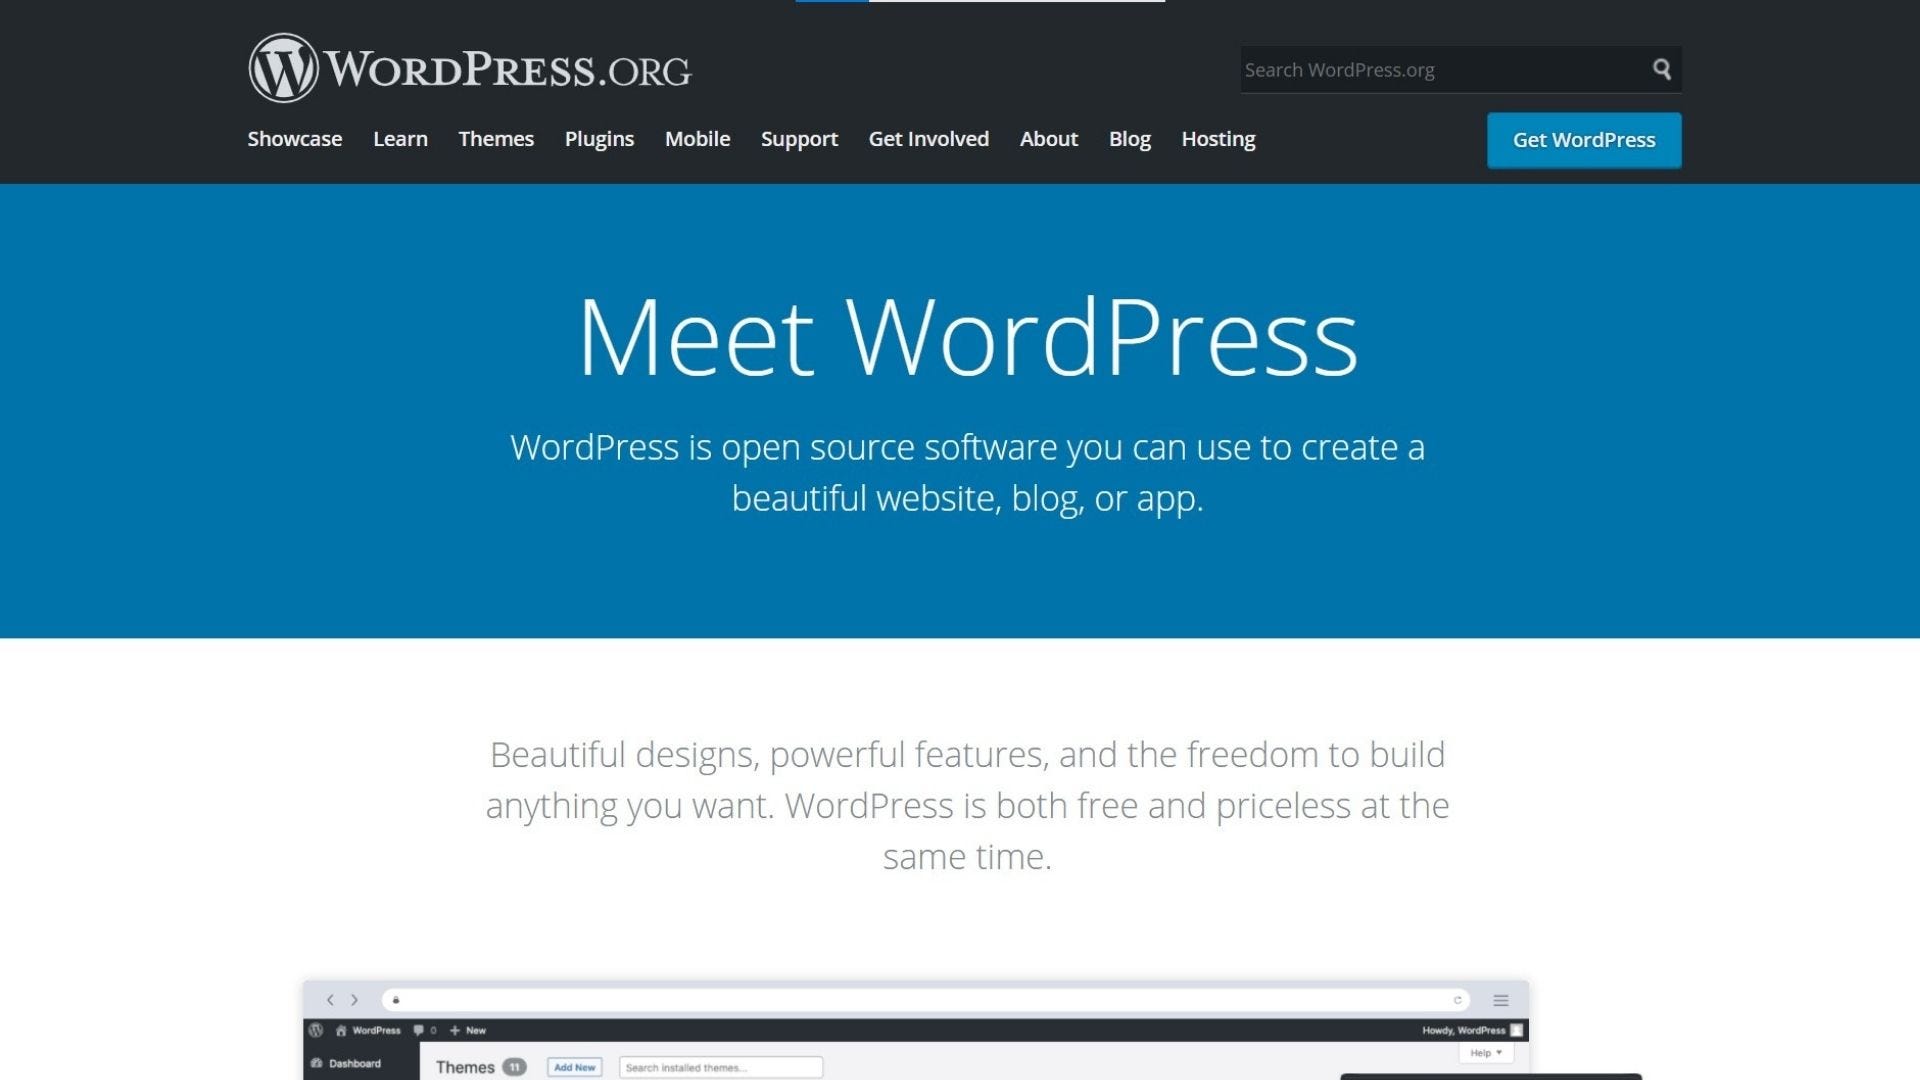 phần mềm wordpress.org trang chủ